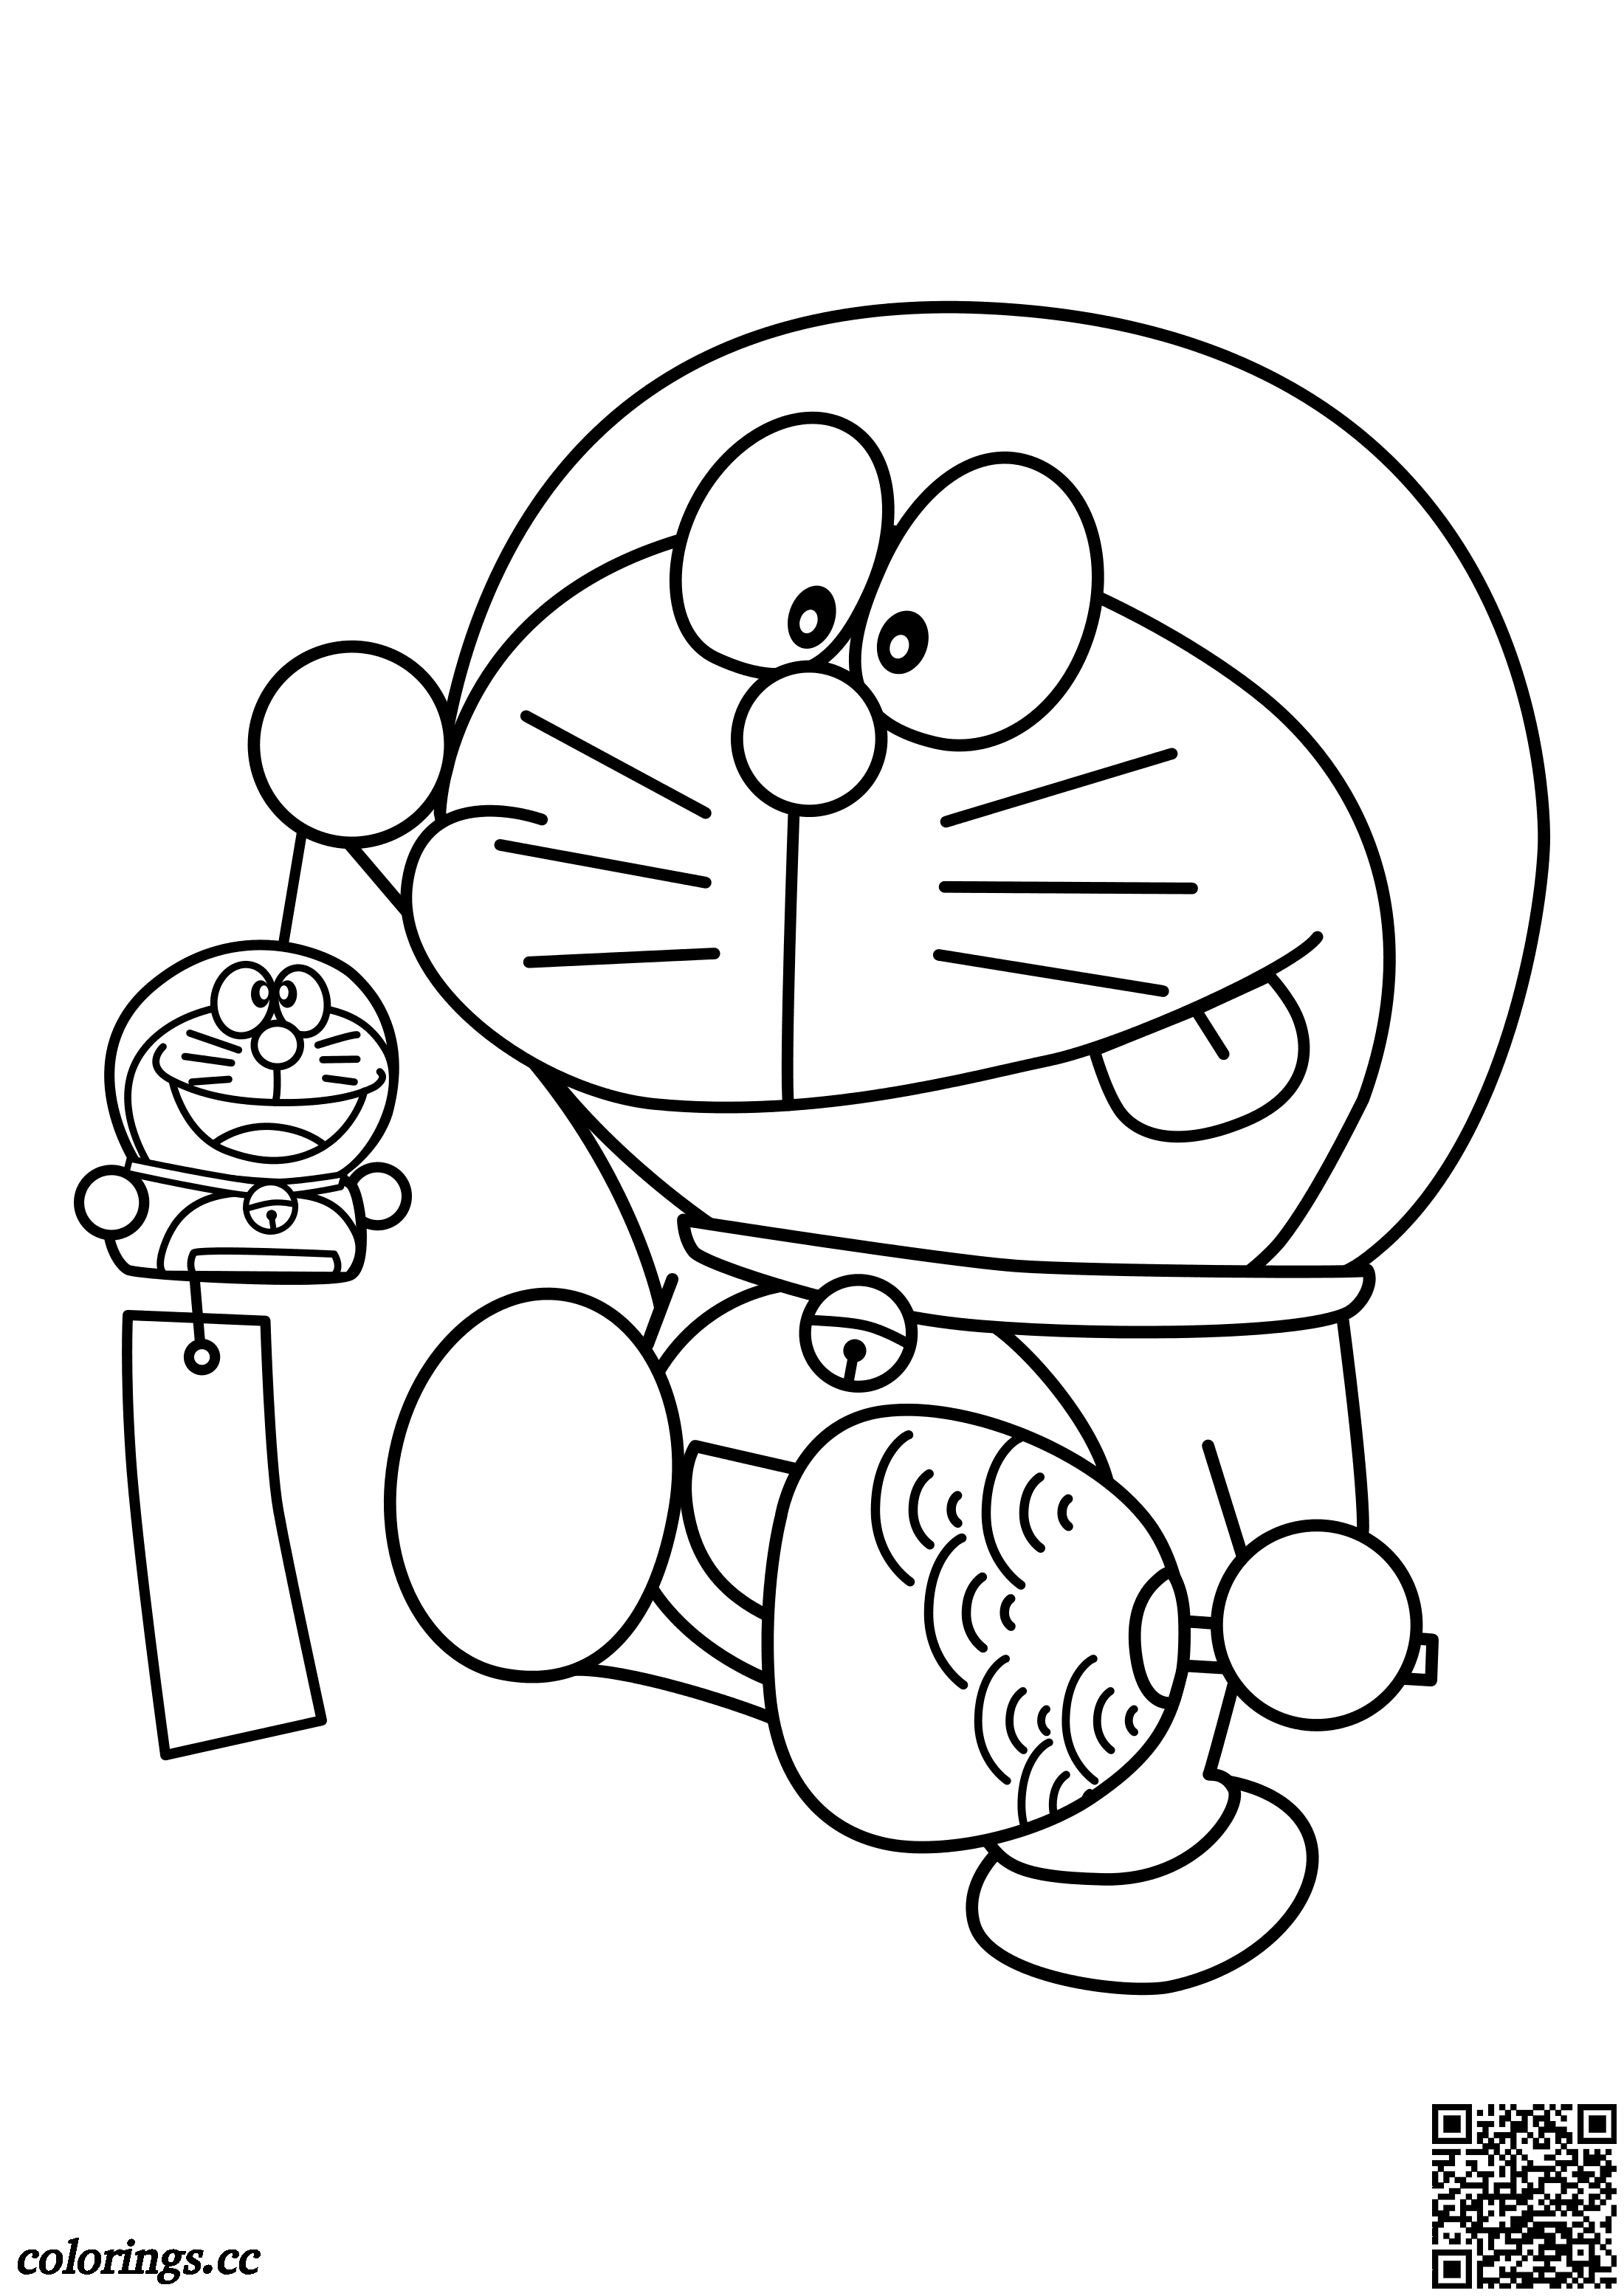 Doraemon with souvenirs coloring pages, Doraemon coloring pages ...